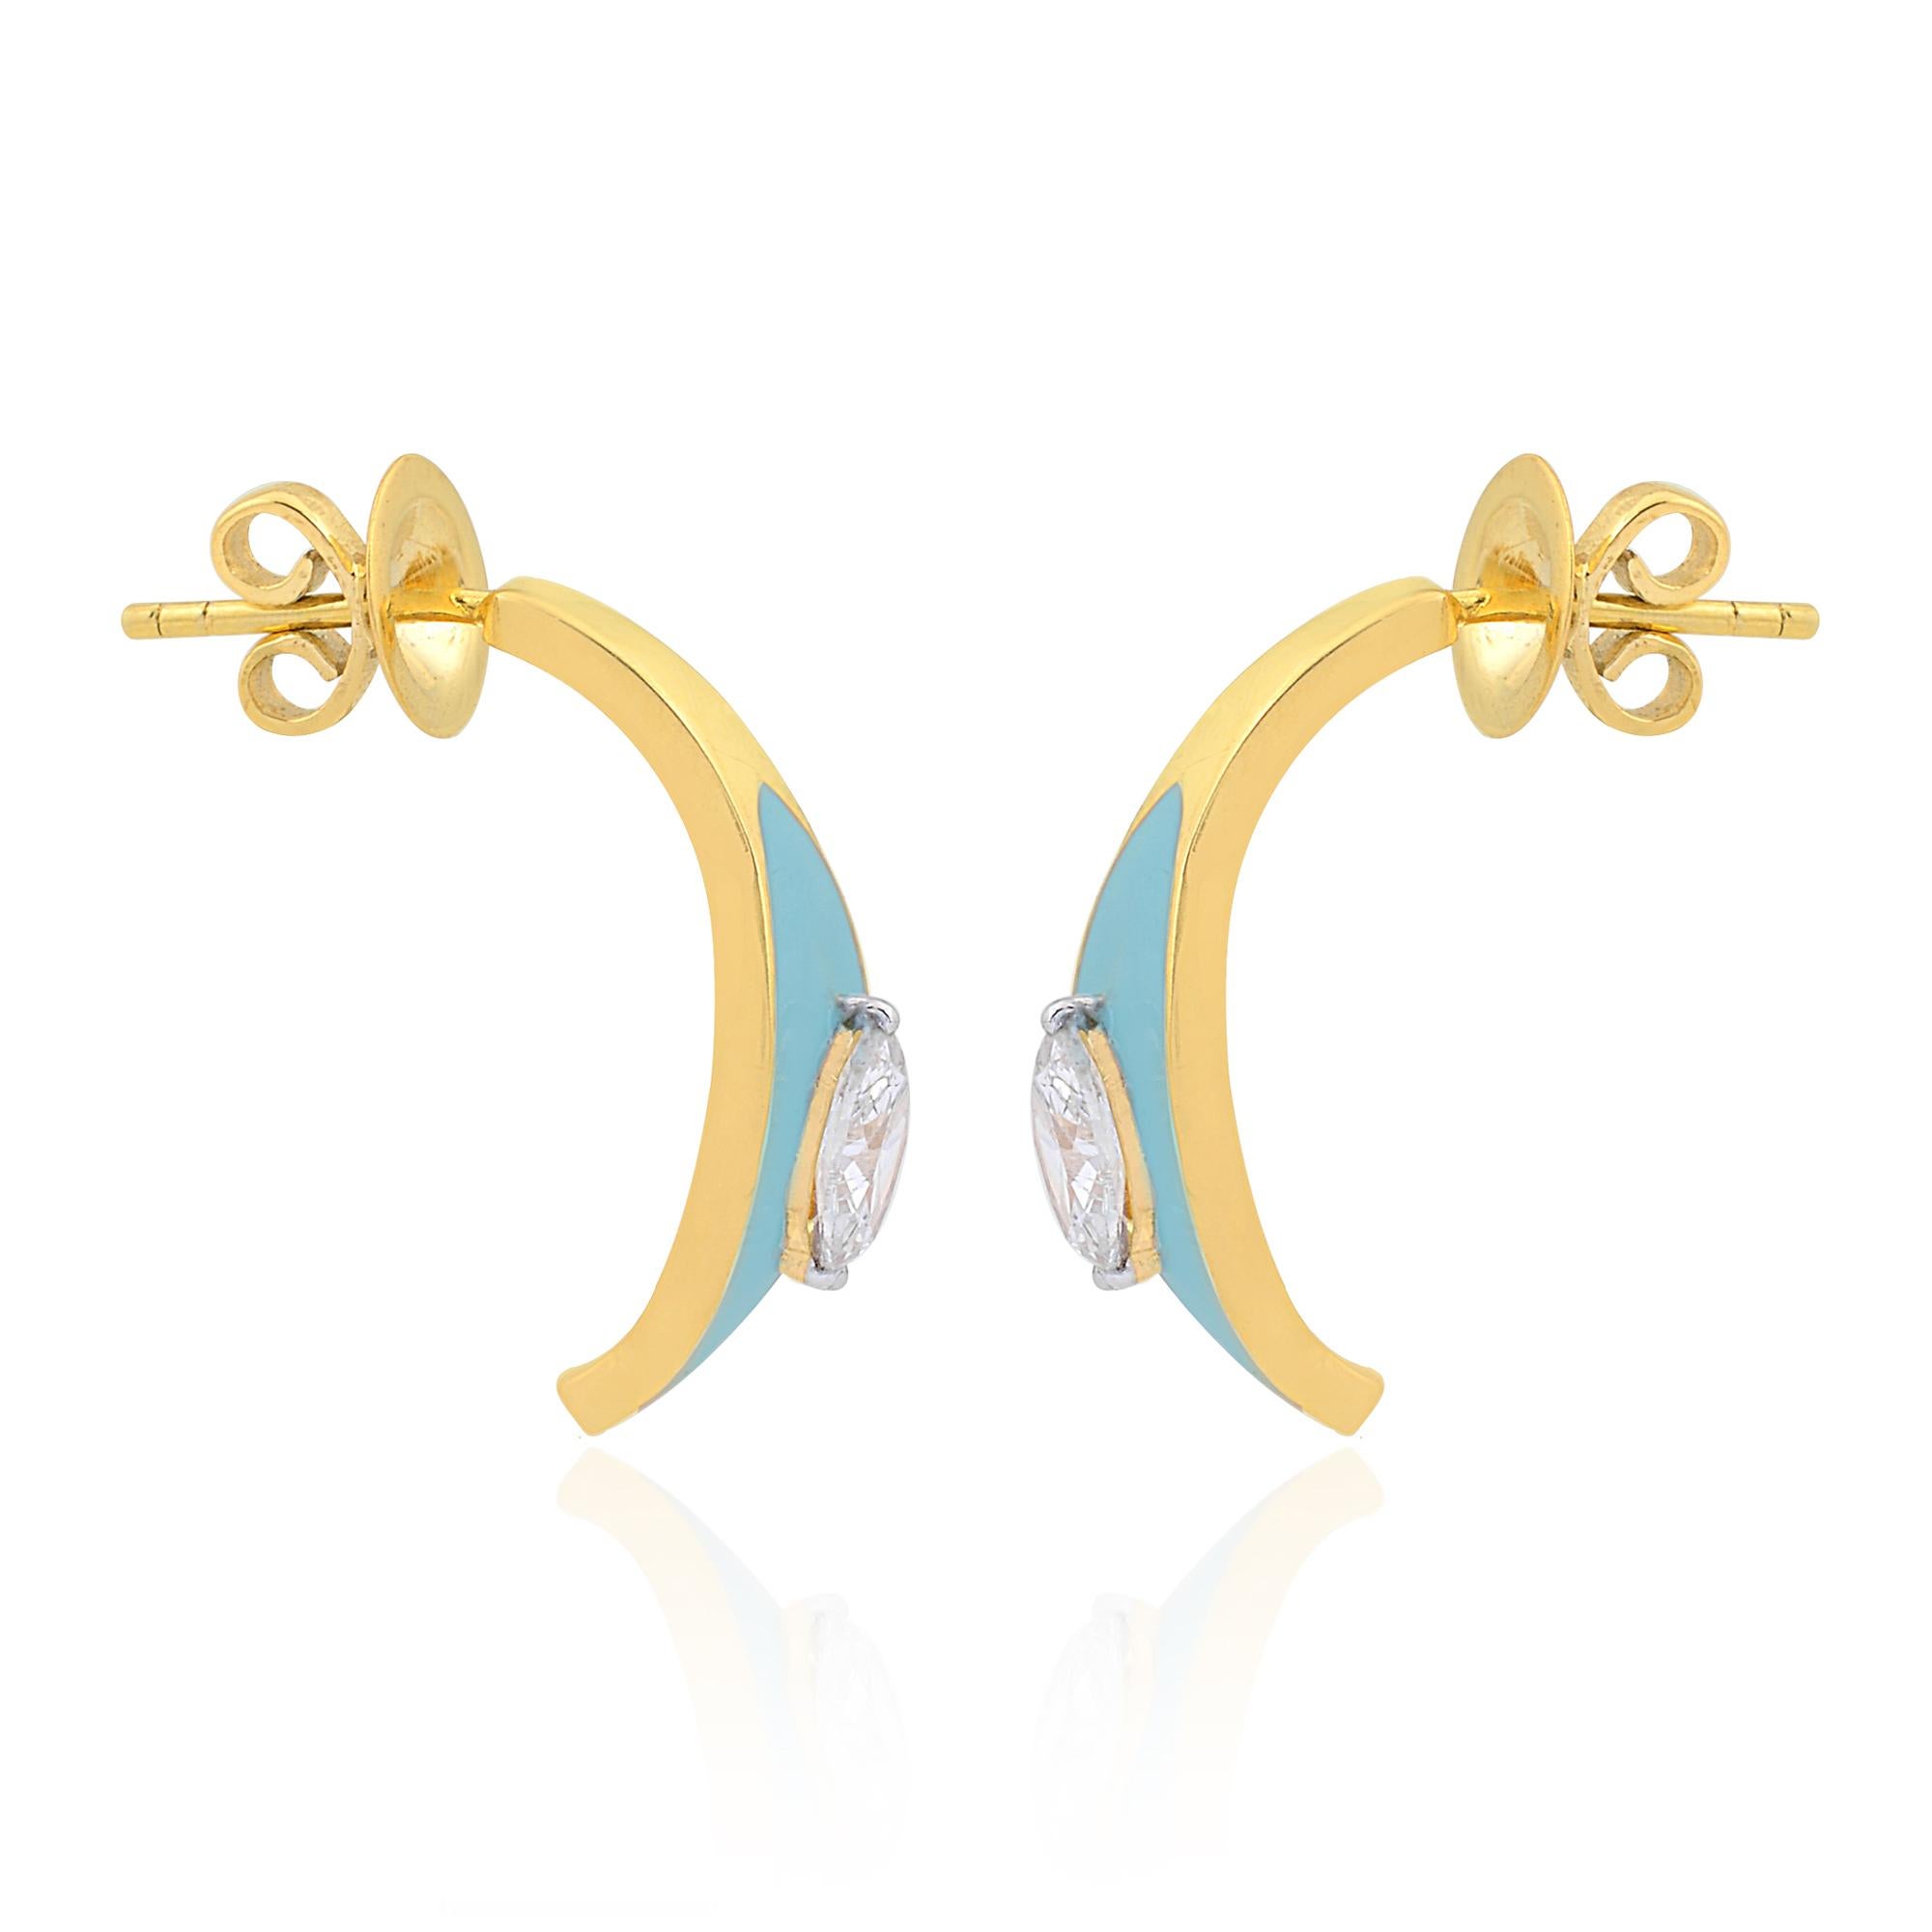 Parer vous d'élégance et de sophistication avec ces étonnantes demi-clous d'oreilles en or jaune 14k de 0,75 carat, ornés d'un diamant marquise et d'une turquoise émaillée. Réalisées avec une attention méticuleuse aux détails, ces boucles d'oreilles